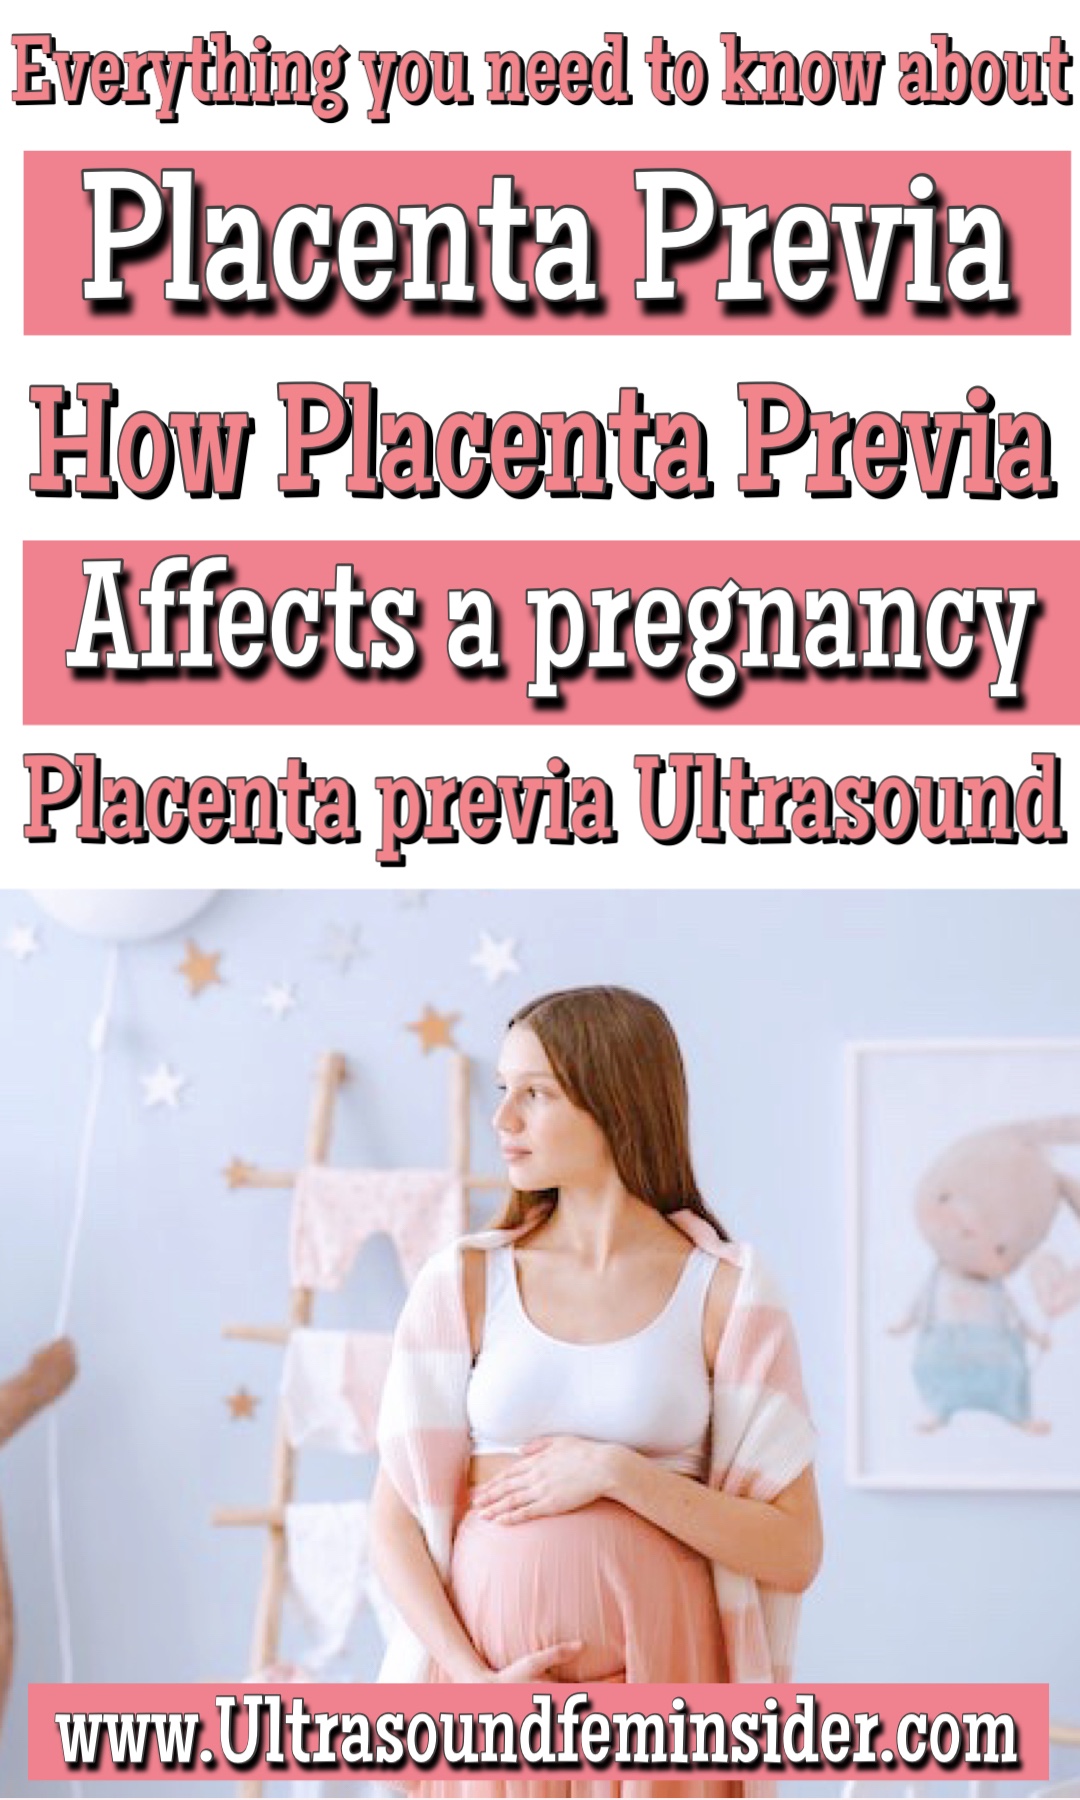 Placenta Previa. How does Placenta Previa Affect Pregnancy?